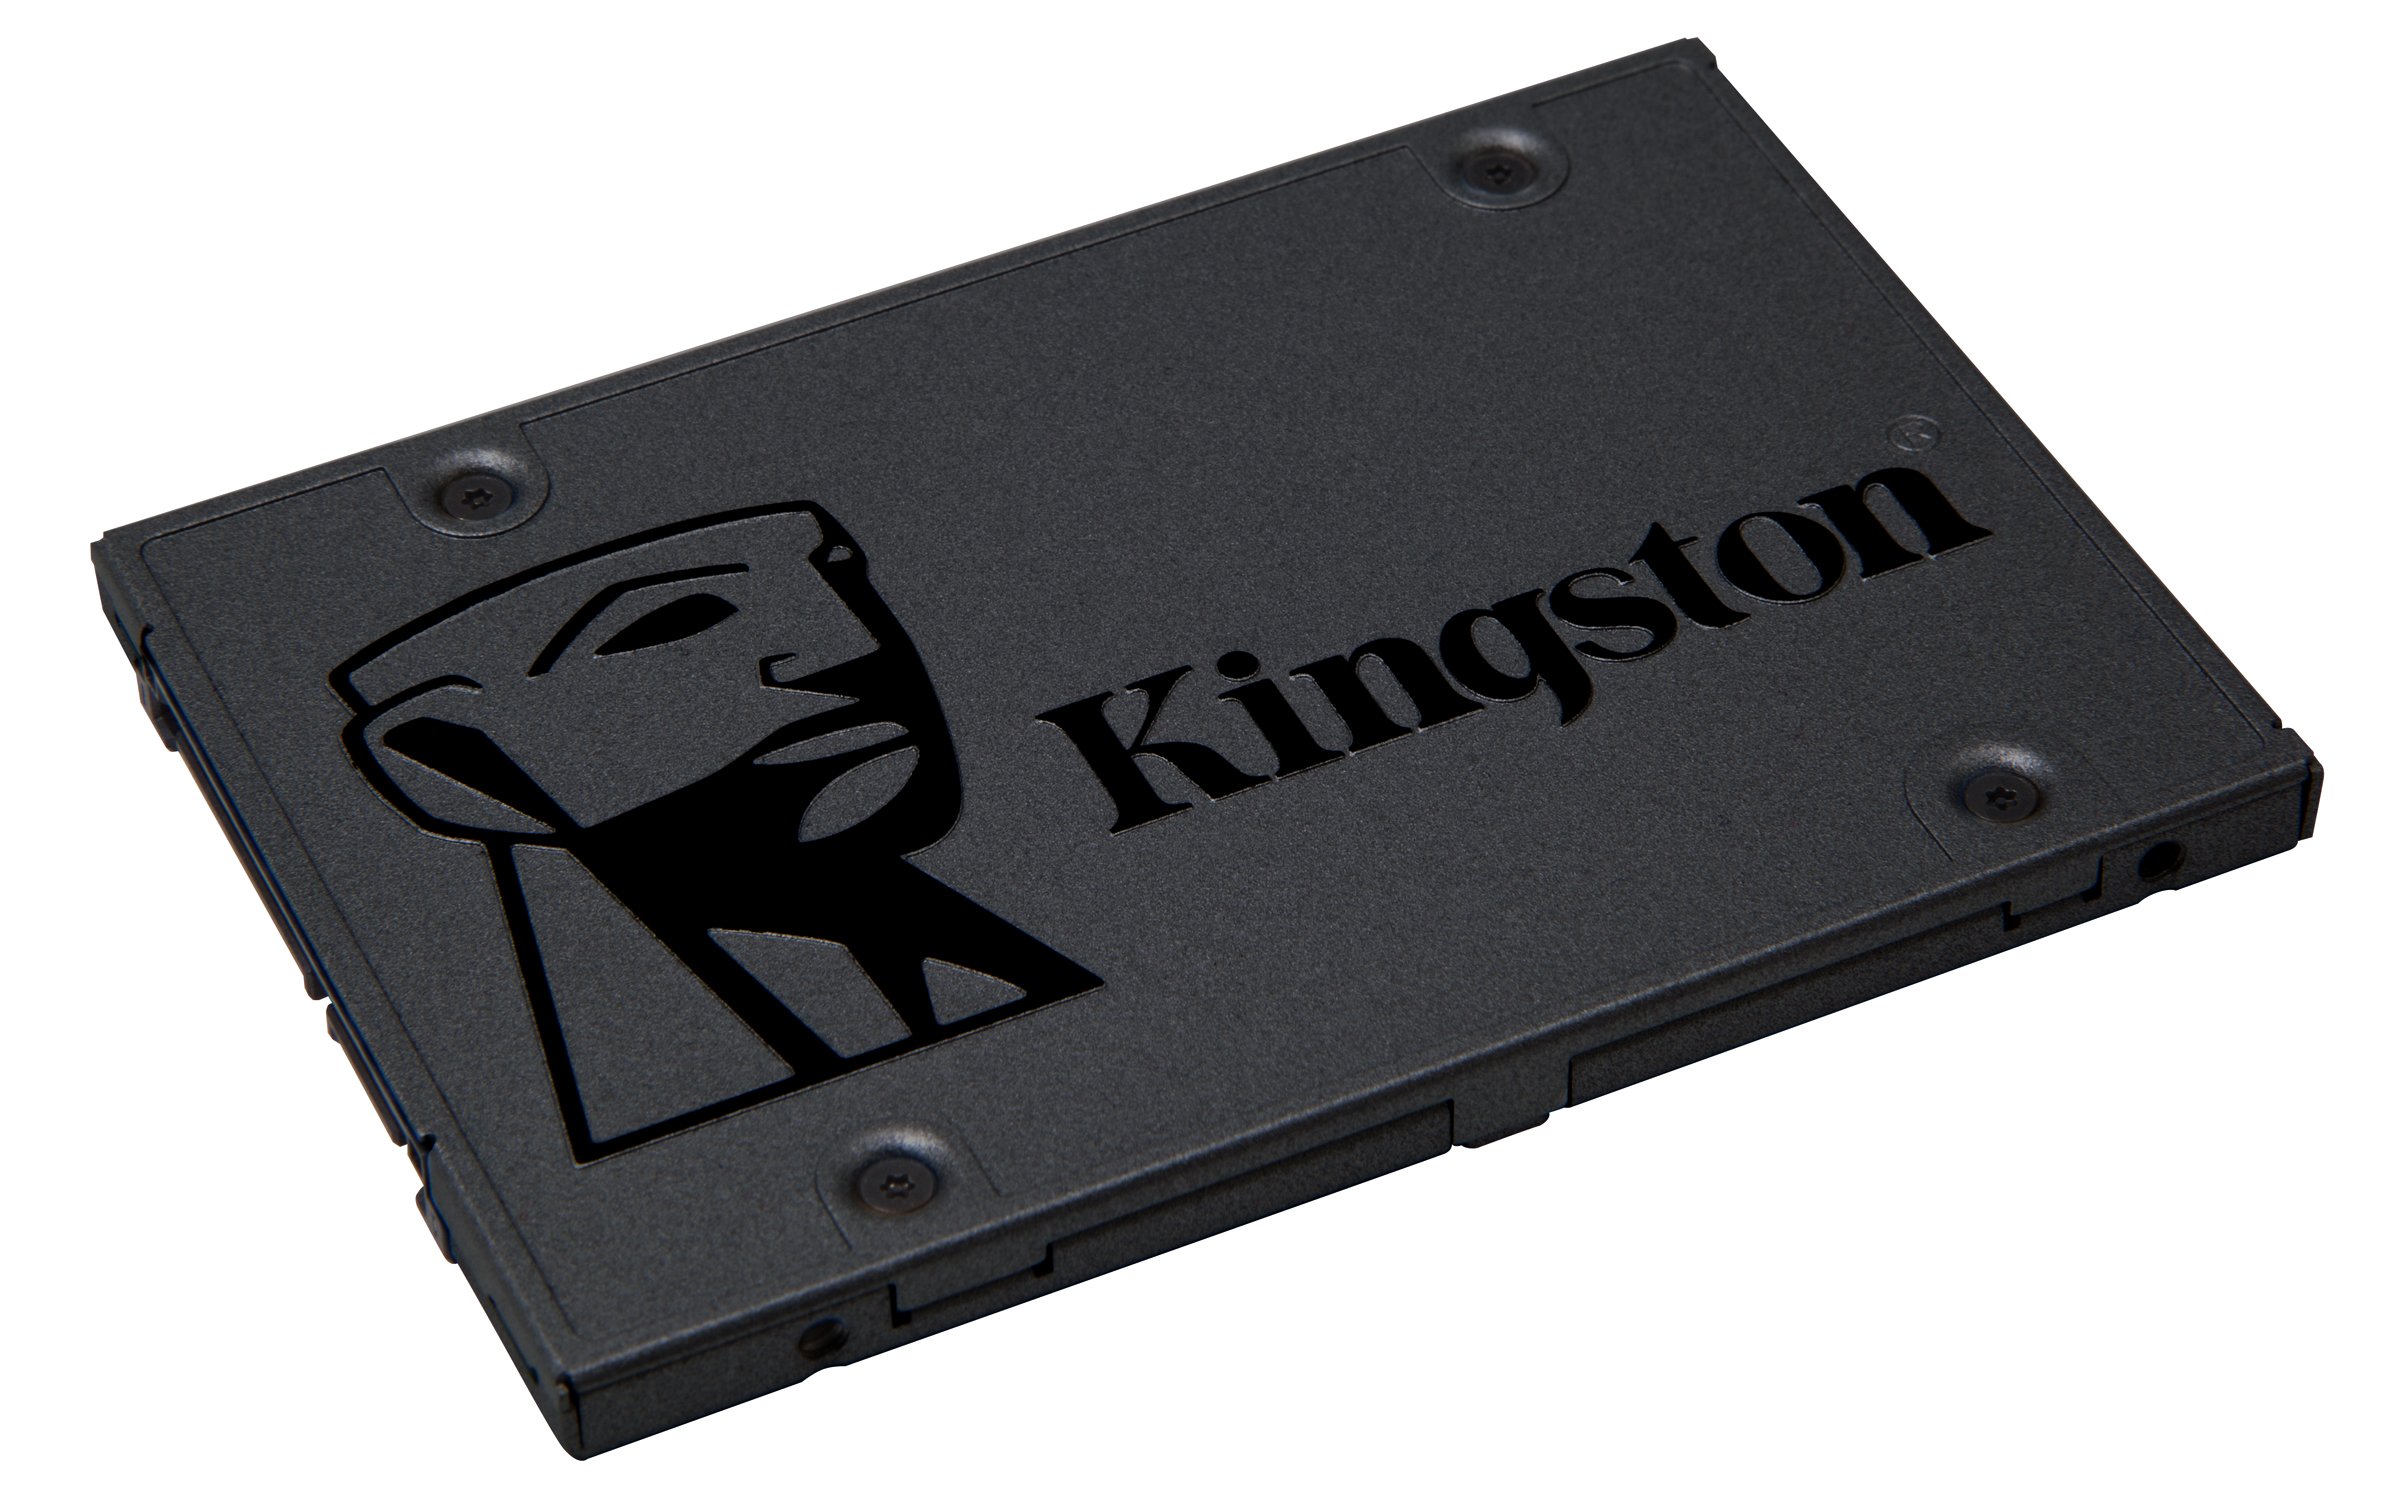 キングストンテクノロジー SSD Q500 480GB 2.5インチ 7mm SATA3 3D NAND採用 SQ500S37480G 削除削除品 3年